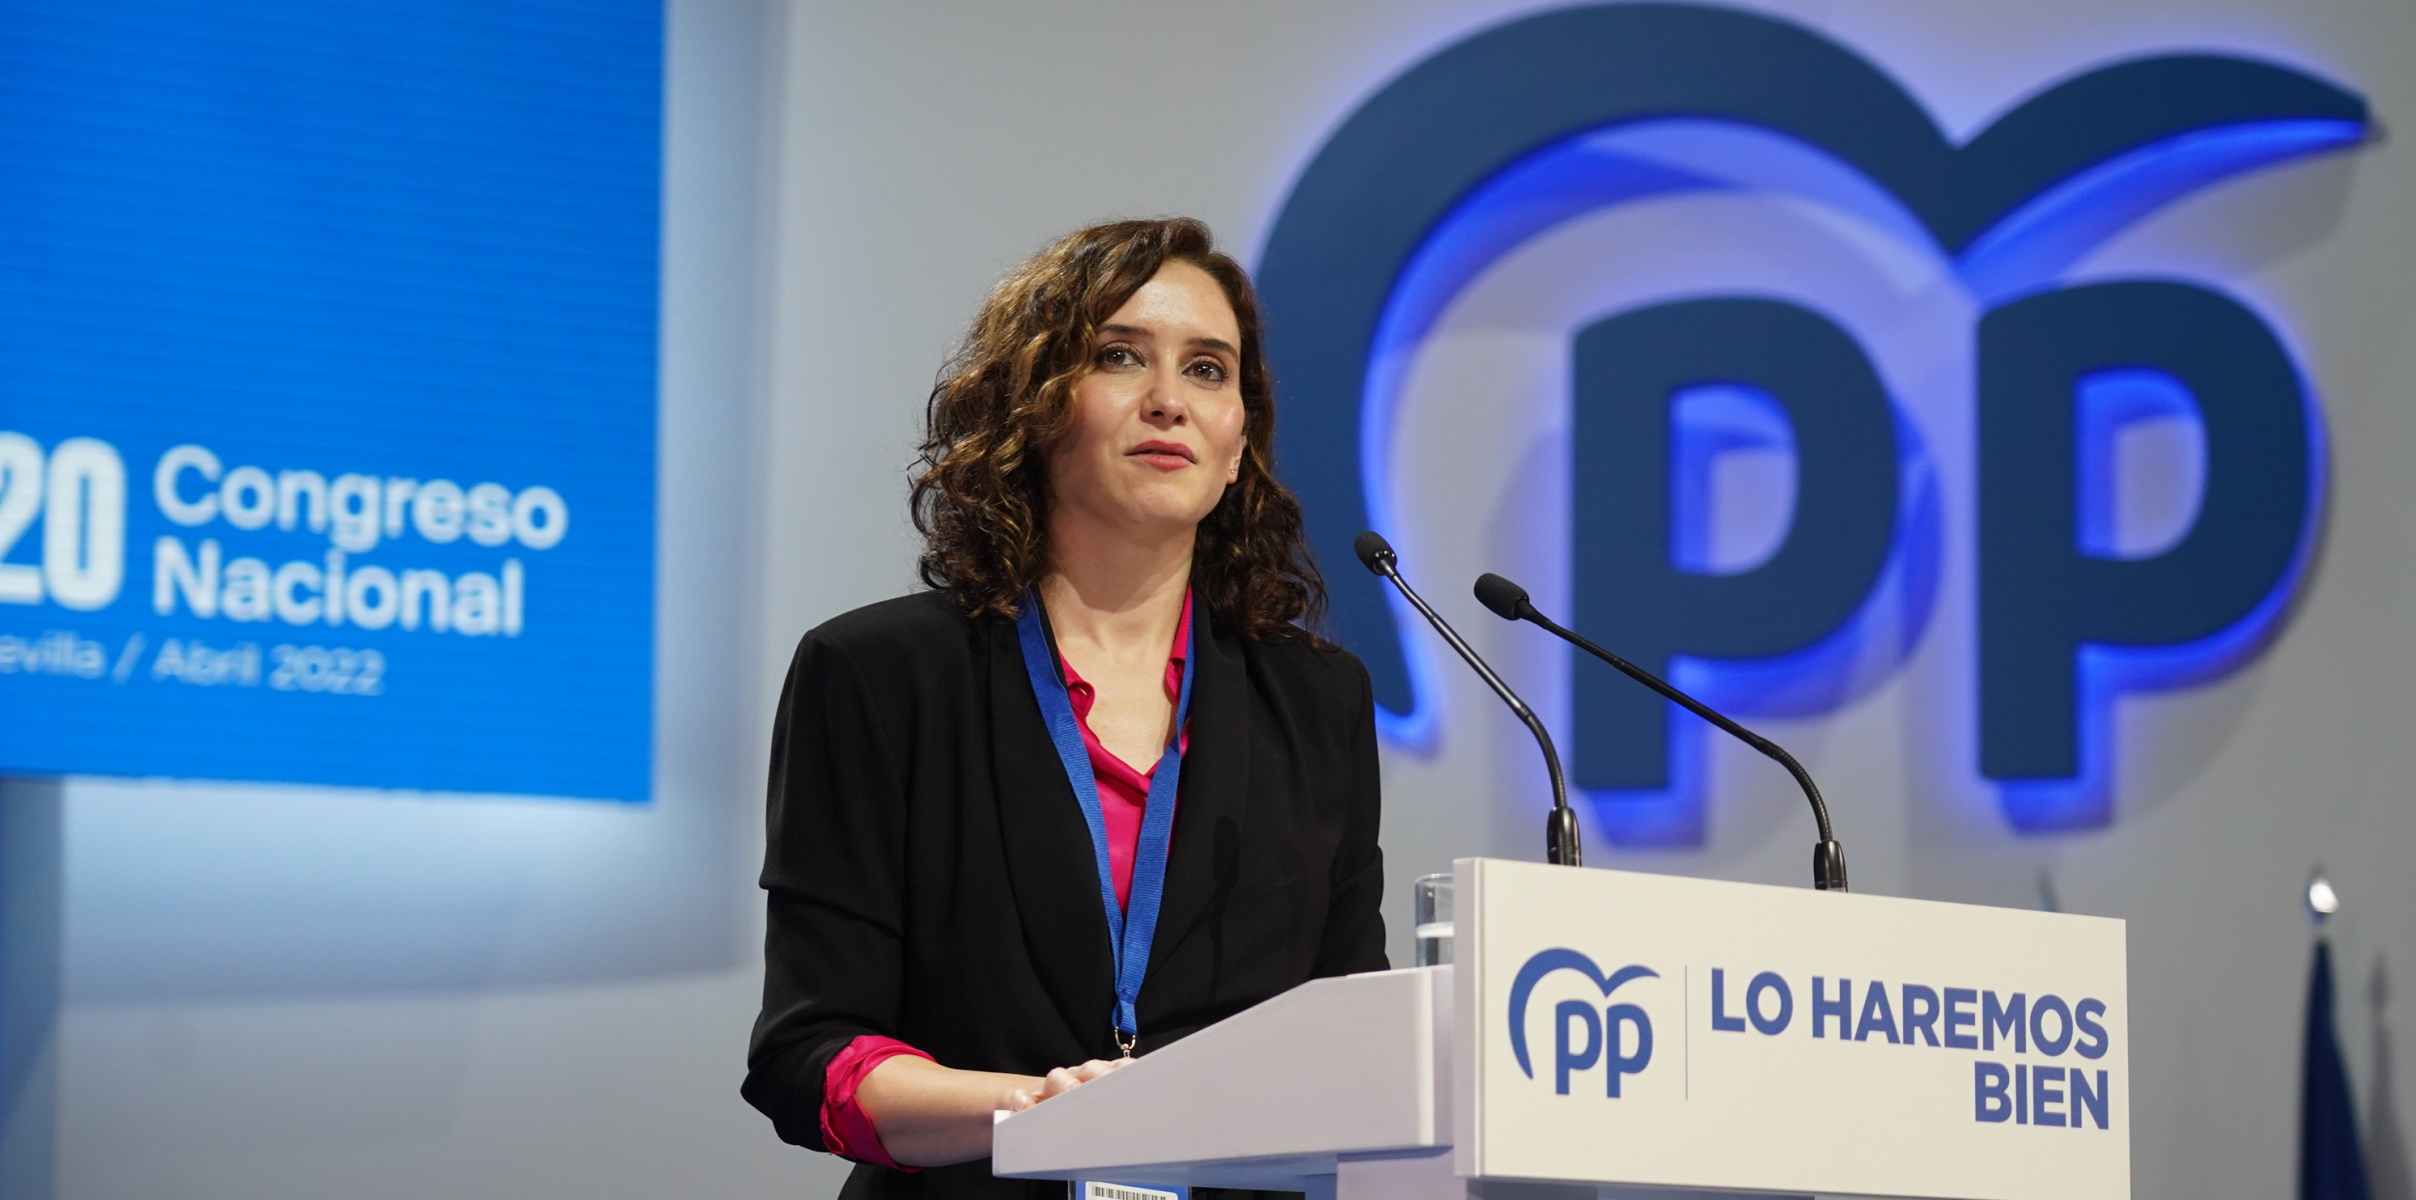 La presidenta de la comunidad de Madrid, Isabel Díaz Ayuso, durante su intervención en el XX Congreso extraordinario del PP.